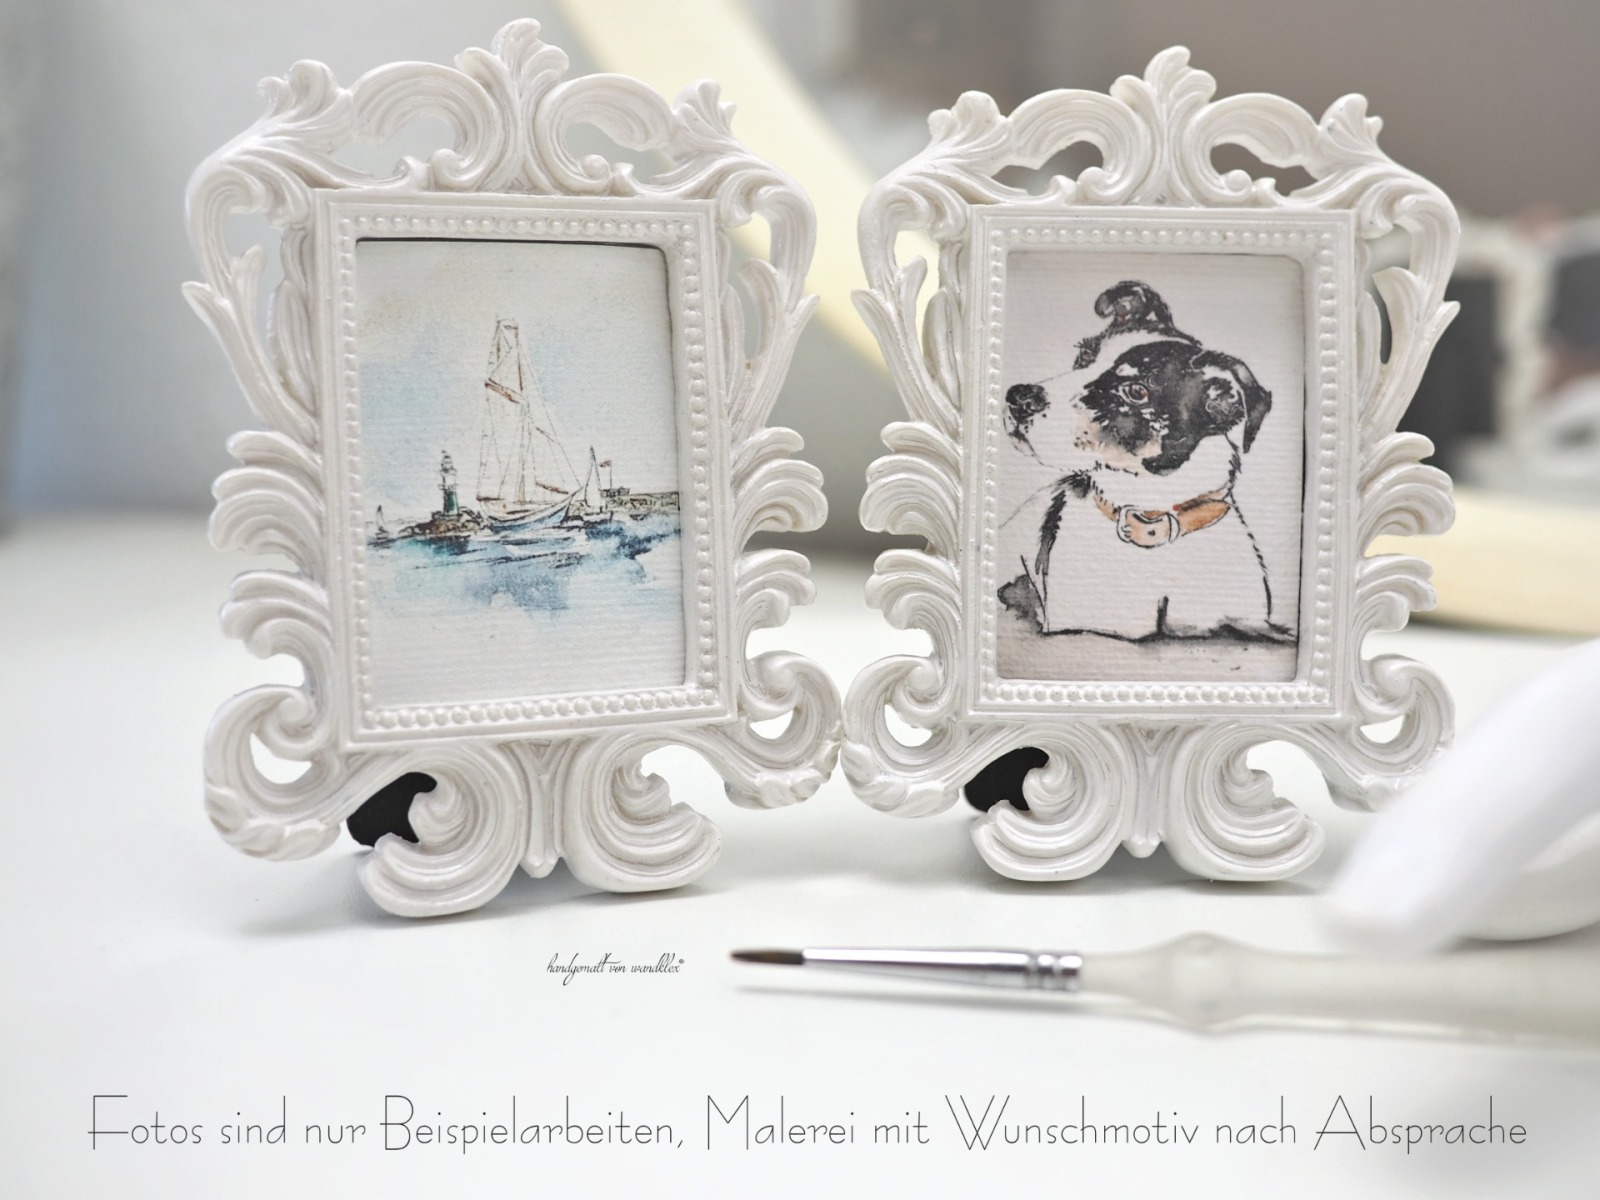 Miniatur-Portrait mit Wunschmotiv 6x4,5 cm in opulentem weißem Mini-Schnörkelrahmen 5